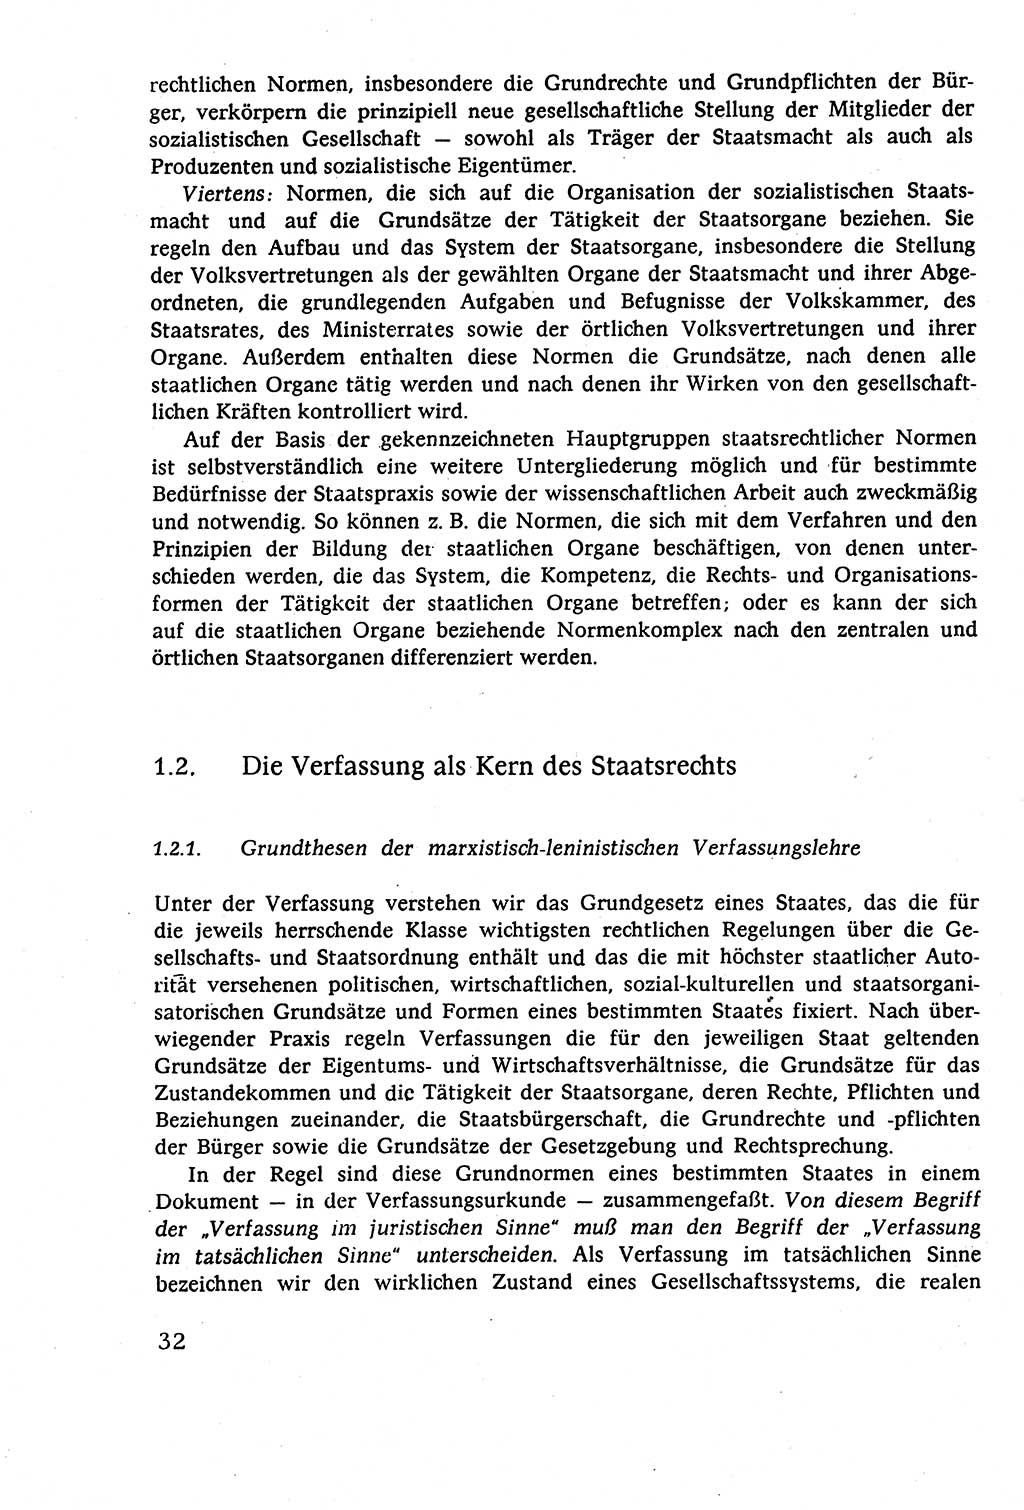 Staatsrecht der DDR (Deutsche Demokratische Republik), Lehrbuch 1977, Seite 32 (St.-R. DDR Lb. 1977, S. 32)